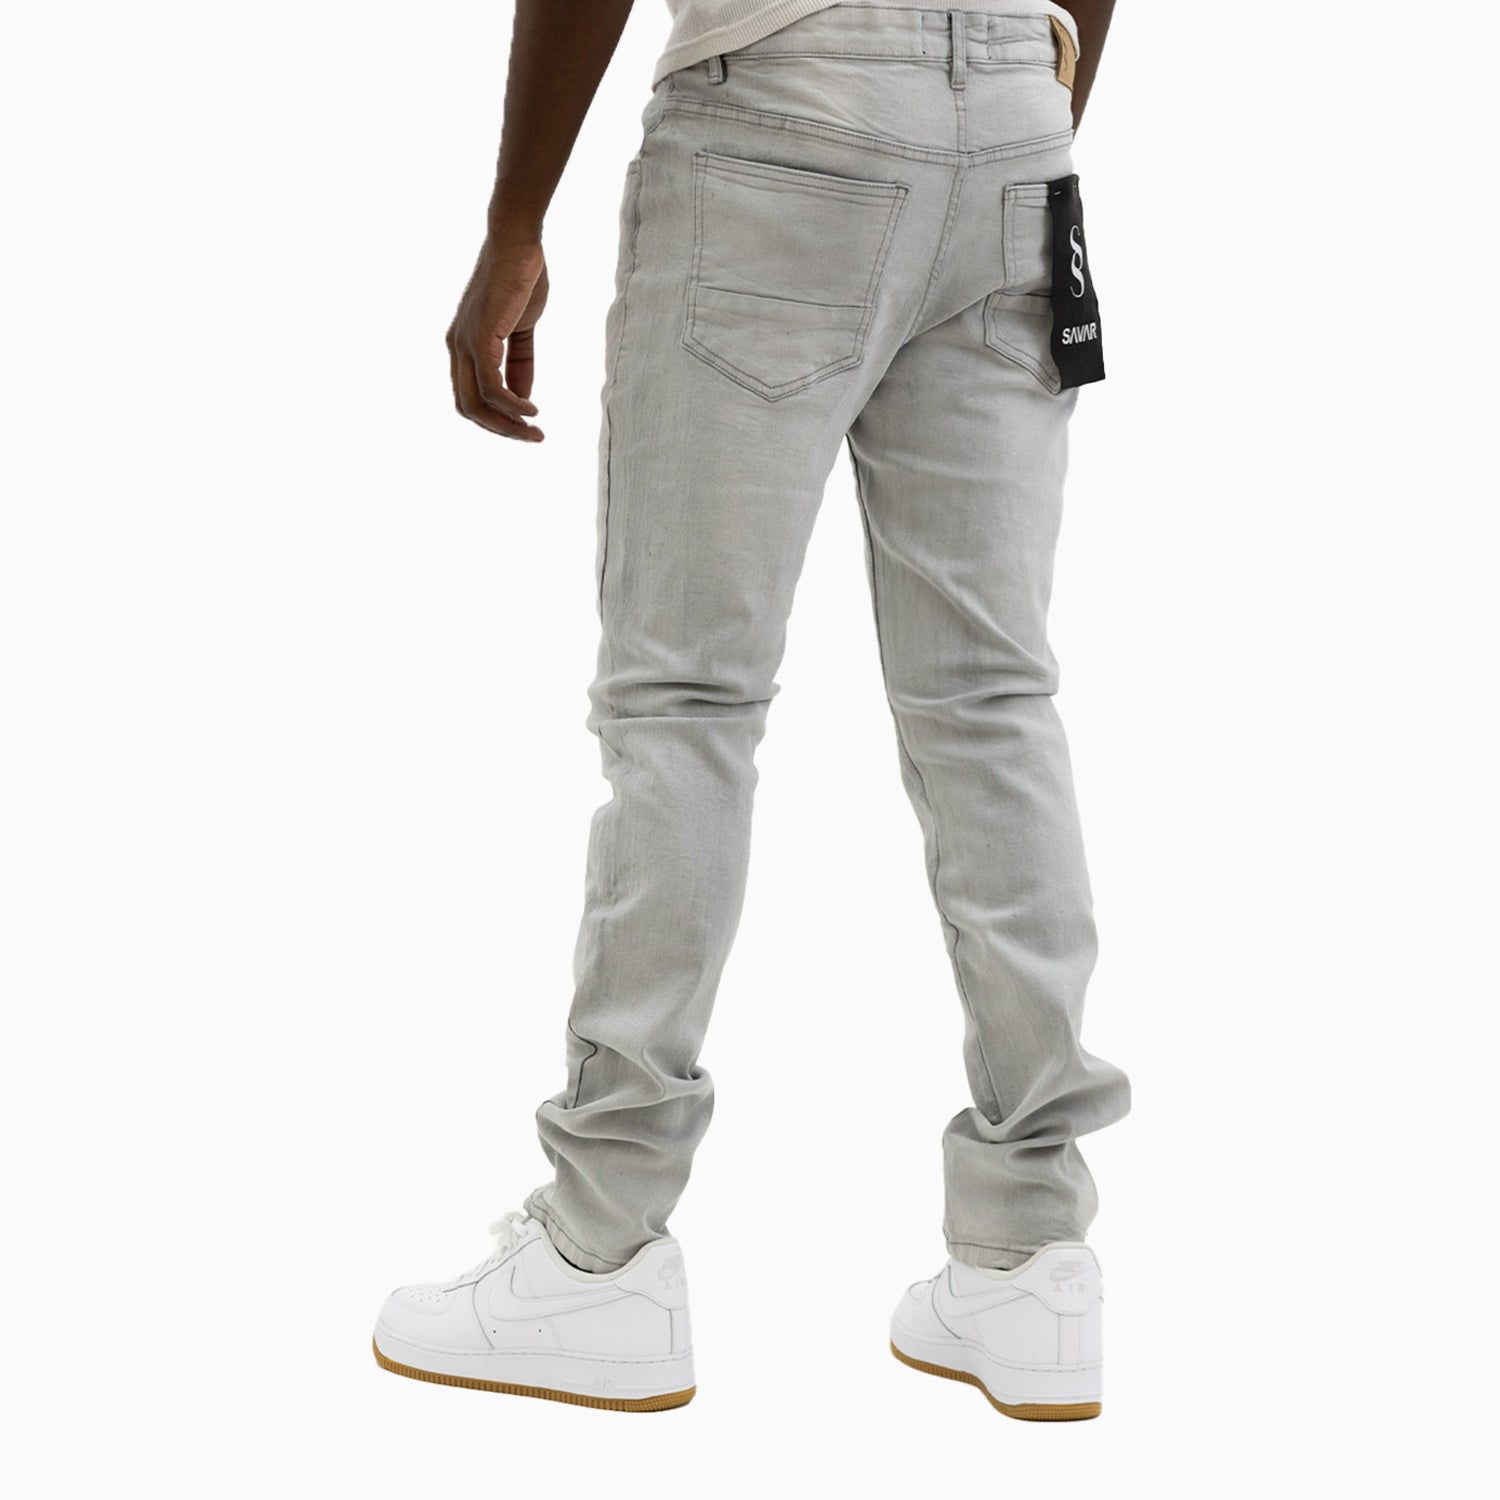 Men's Savar Ice Grey Slim Denim Ripped Jeans Pant